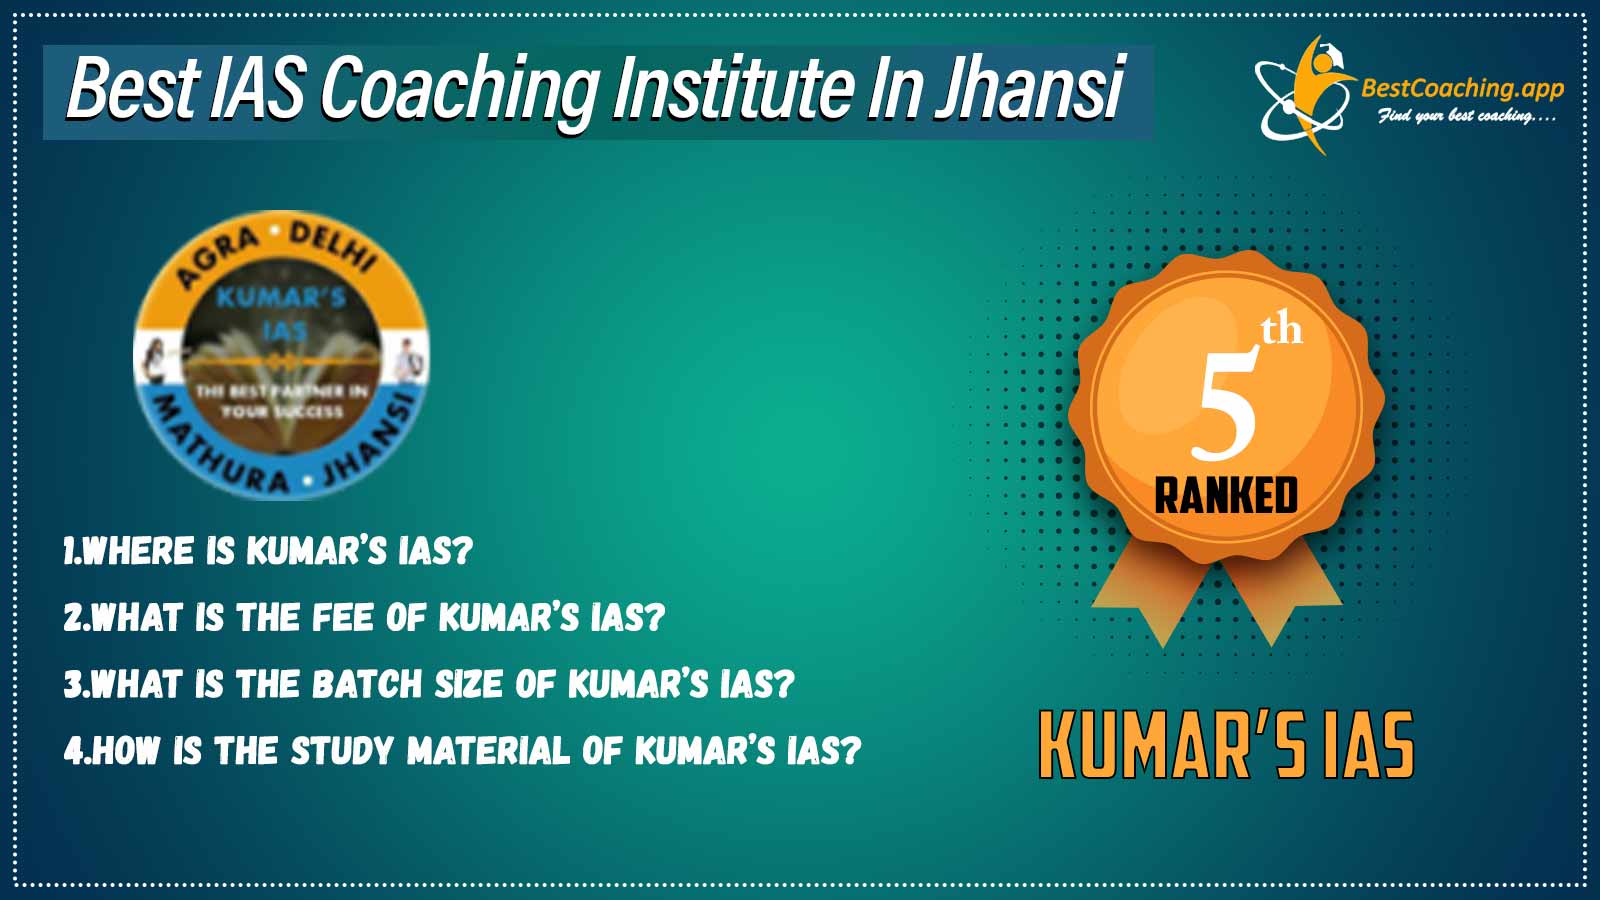 Top IAS Coaching in Jhansi